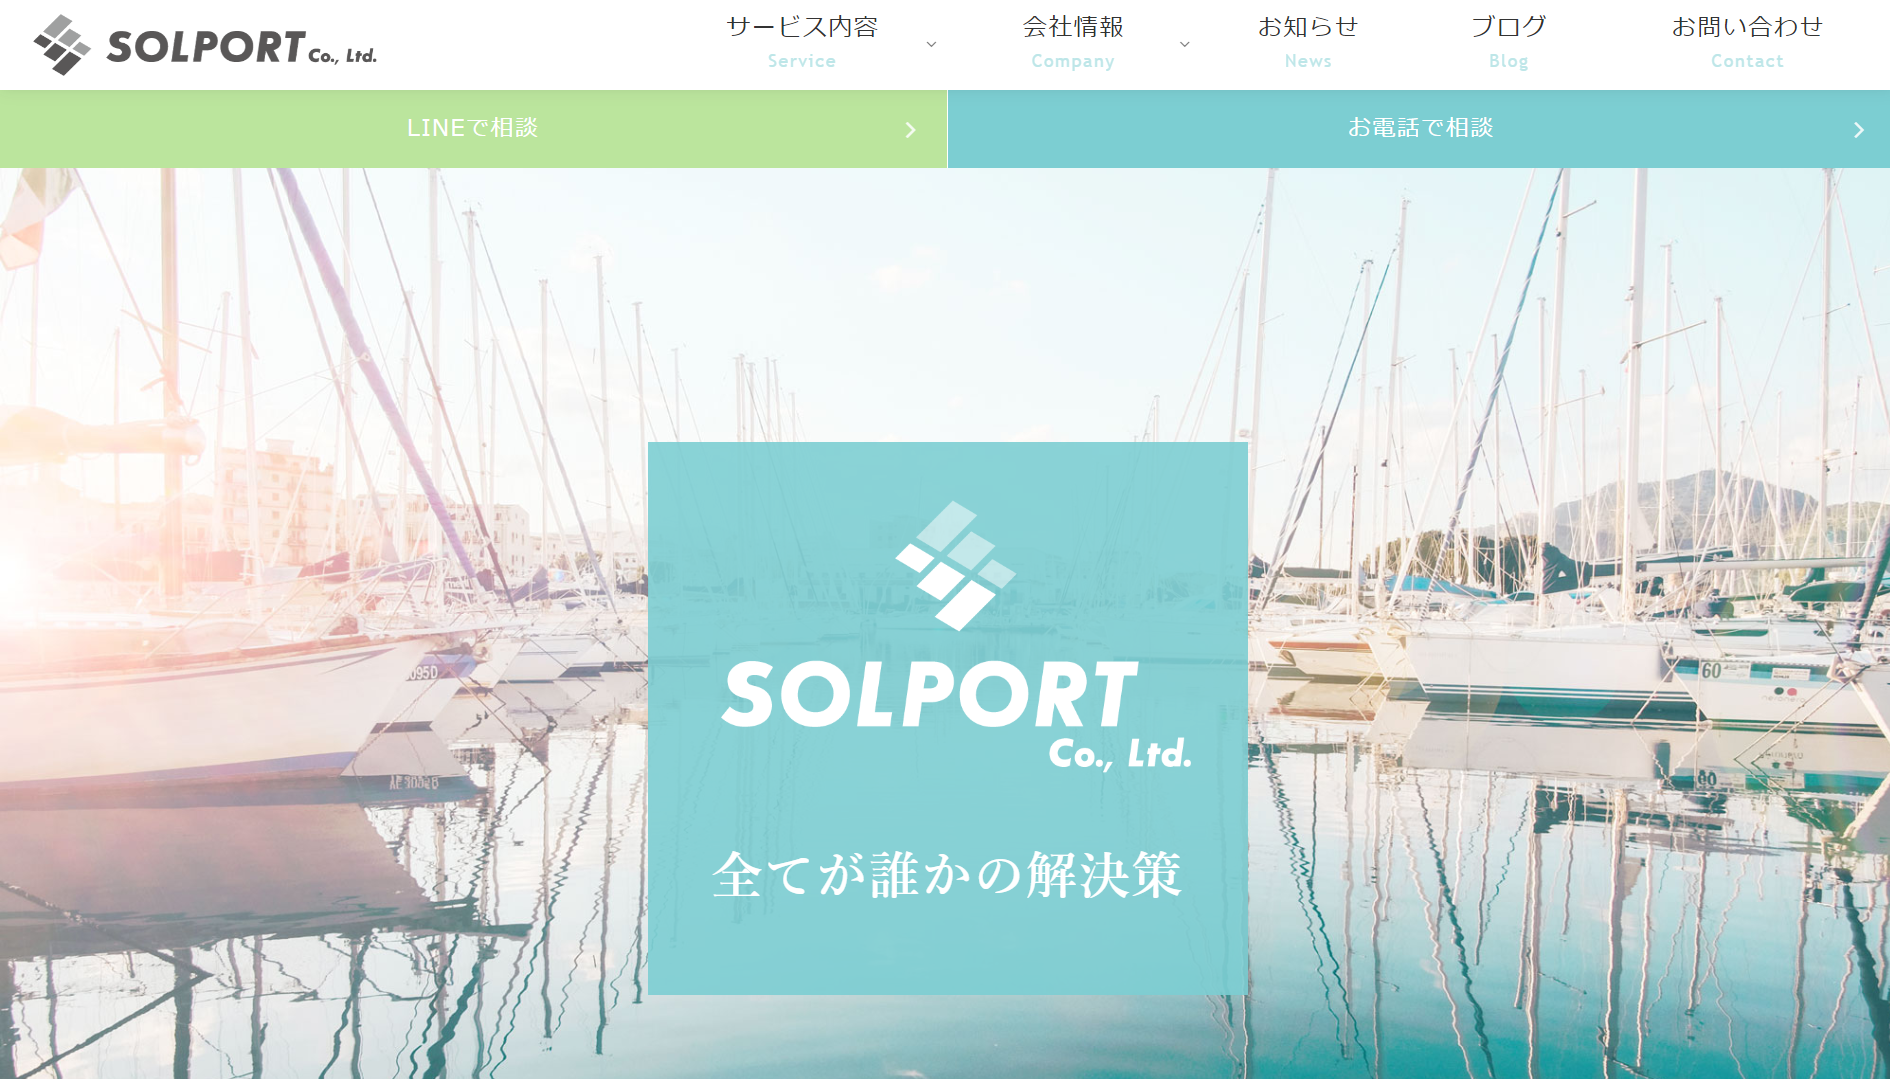 ソルポート株式会社のソルポート株式会社サービス